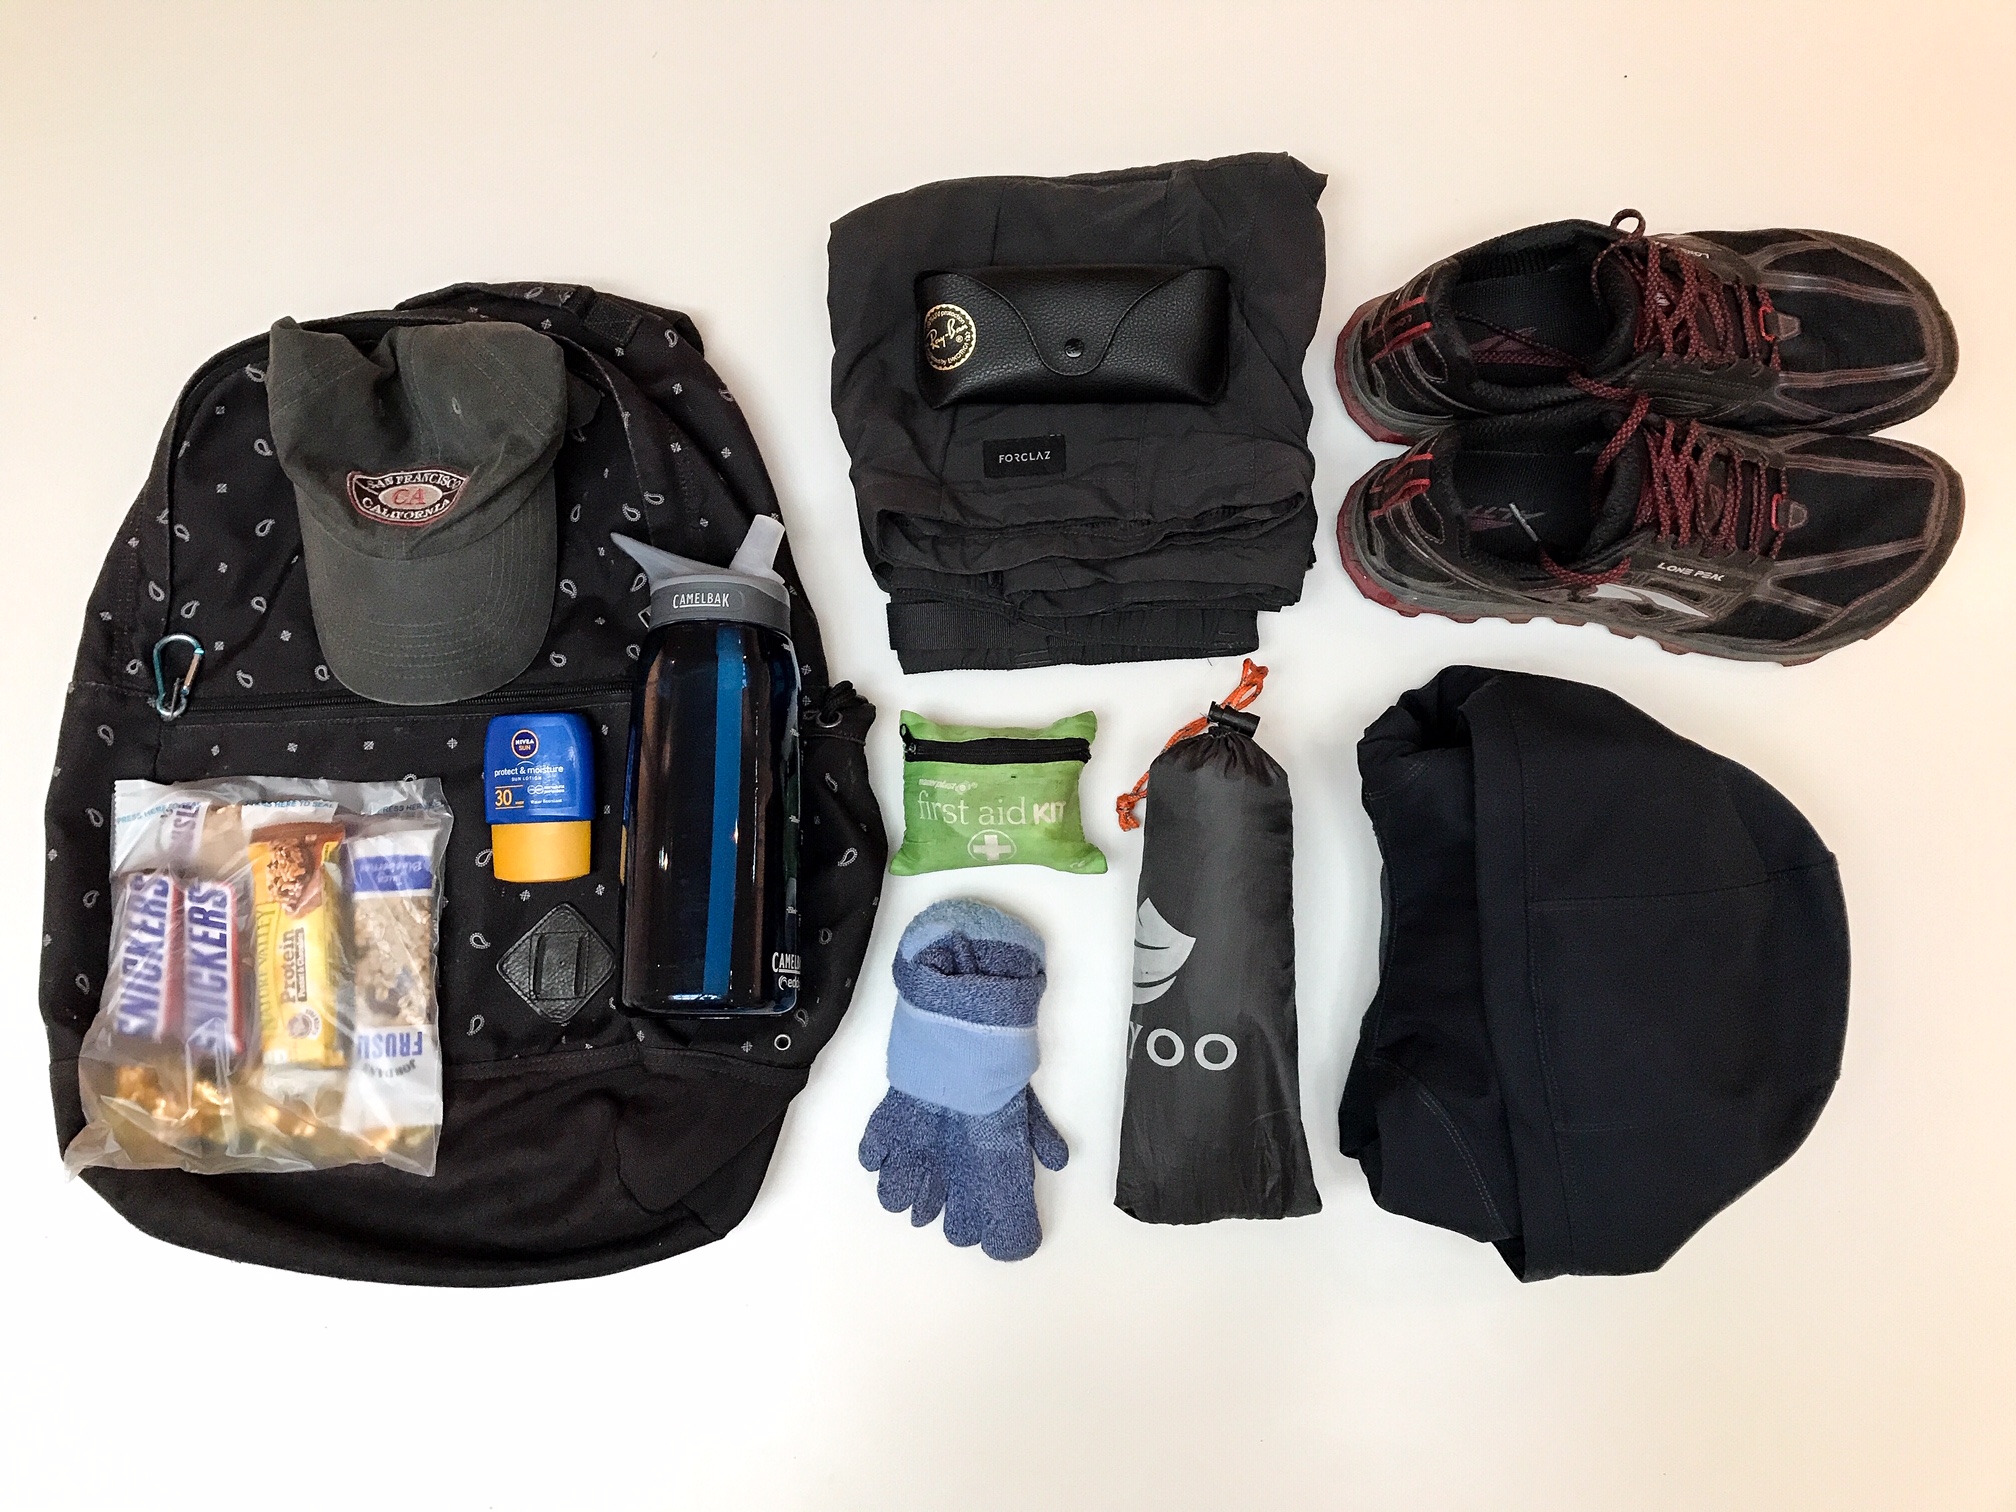 https://mattwalkwild.com/wp-content/uploads/2020/08/day-hiking-gear-essentials-10.jpeg